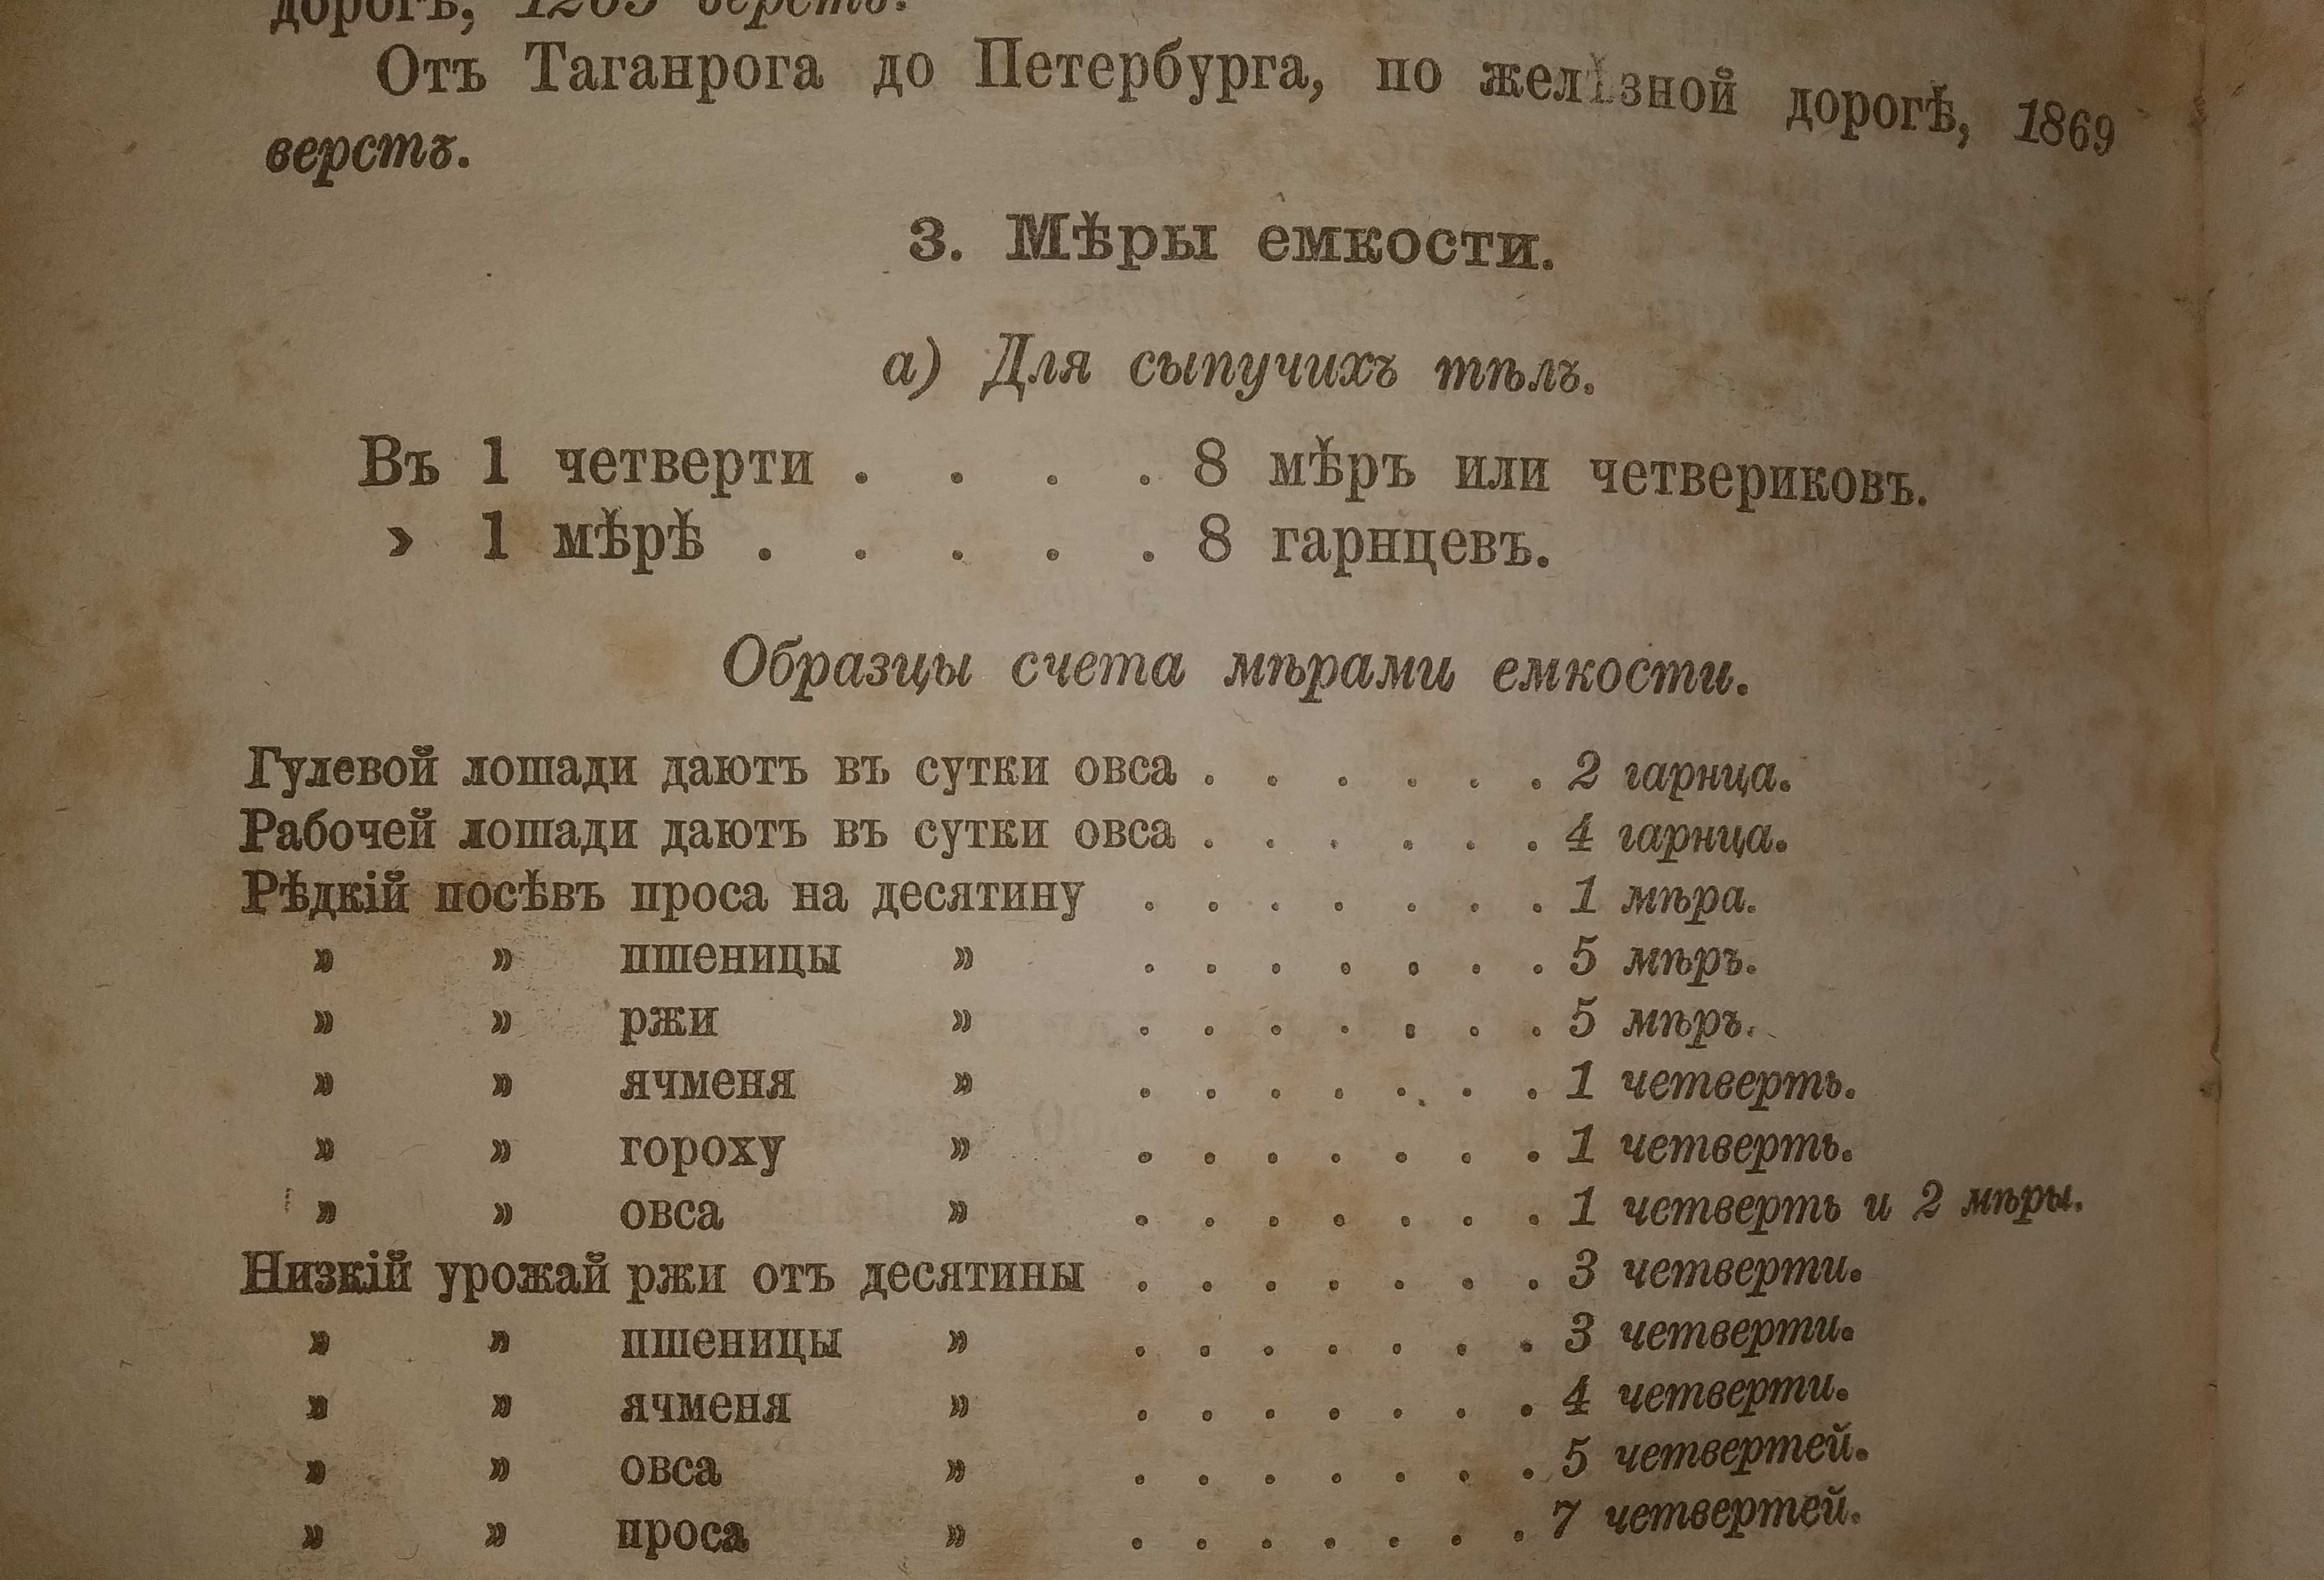 Книга для чтения учащихся в школе и дома "Наш друг". 1872 г. издания.